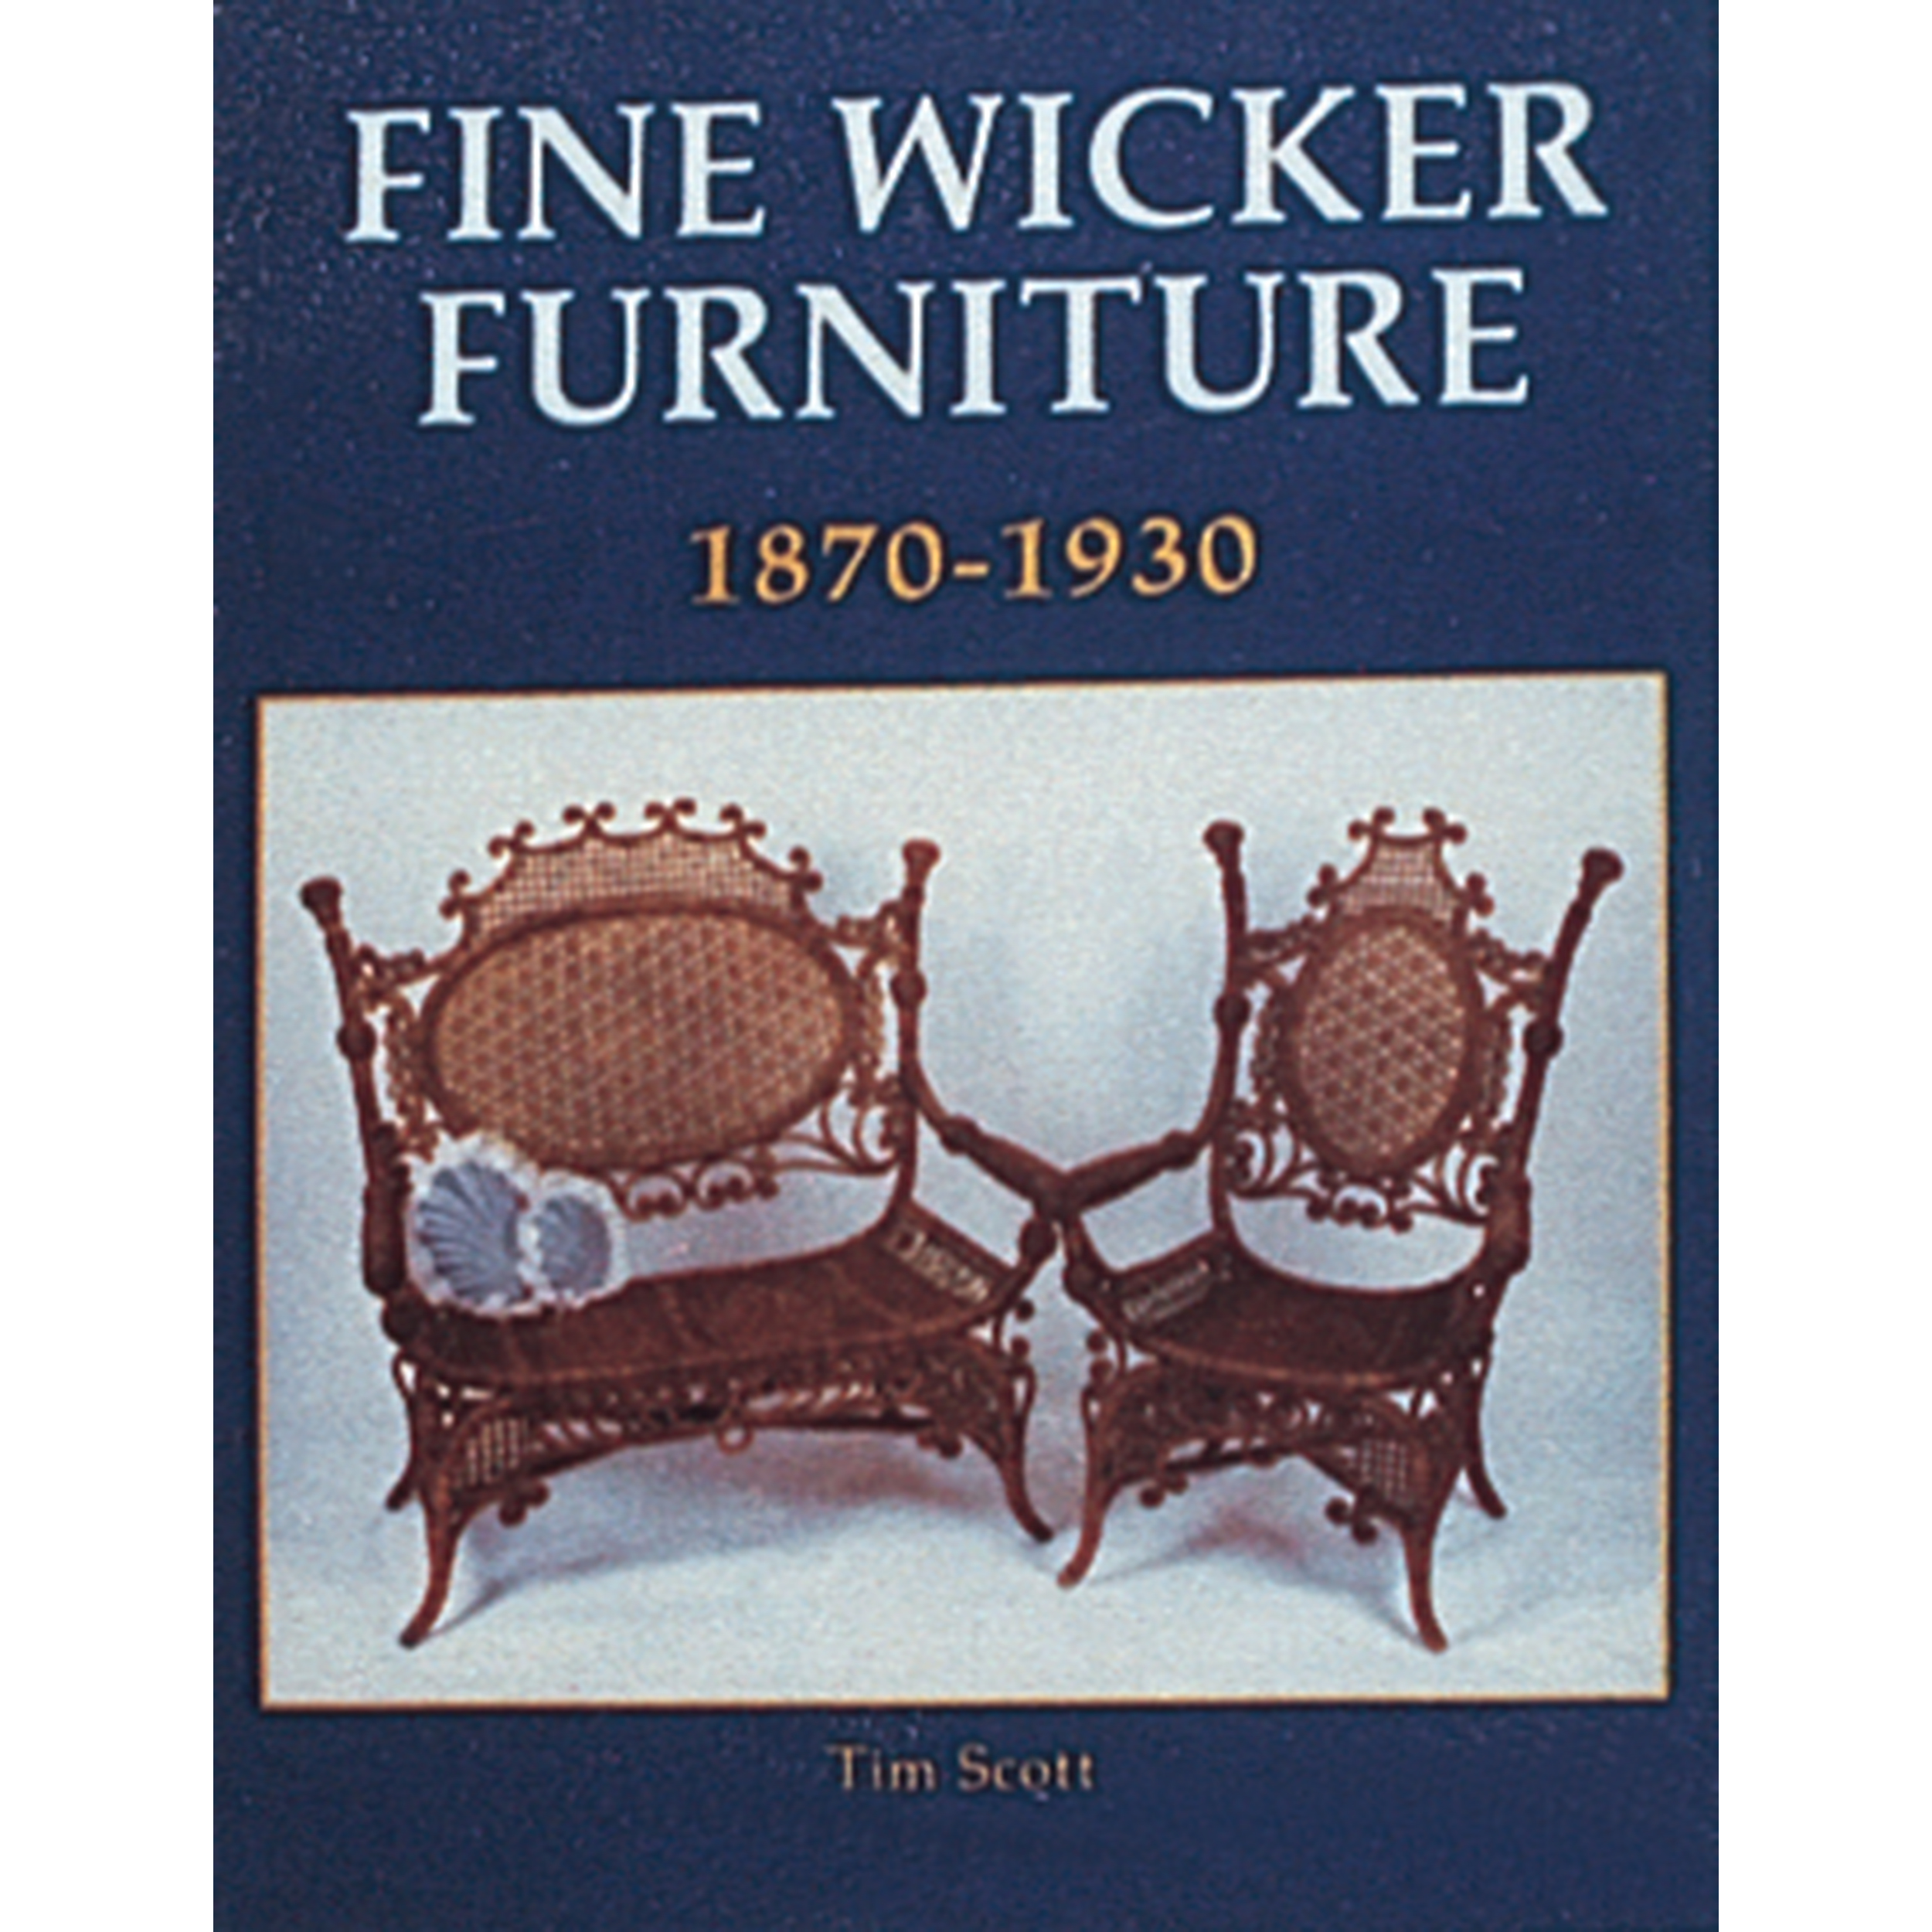 Fine Wicker Furniture: 1870-1930